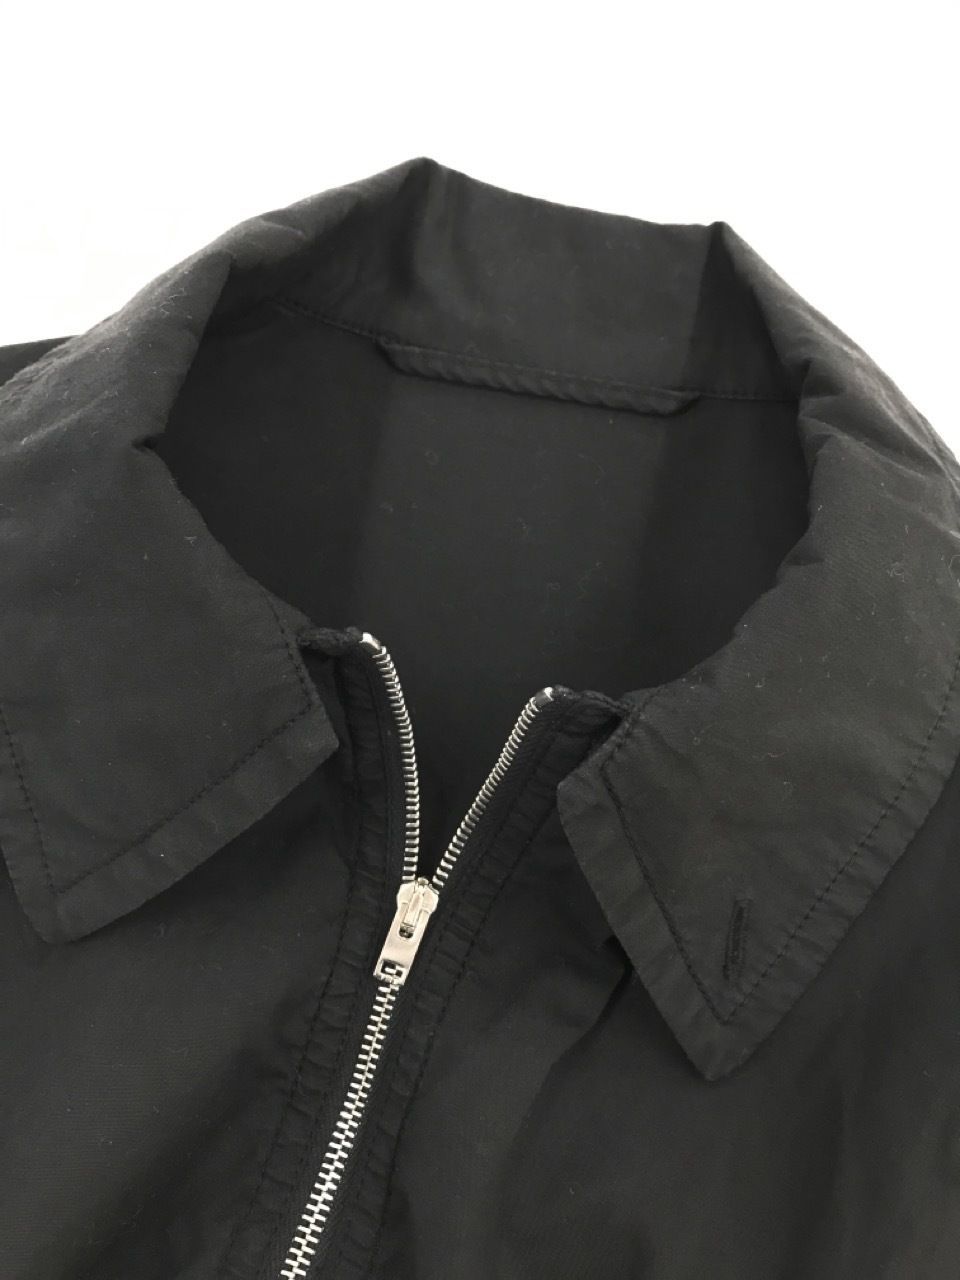 LEMAIRE ジップアップジャケット L ブラック - メルカリ